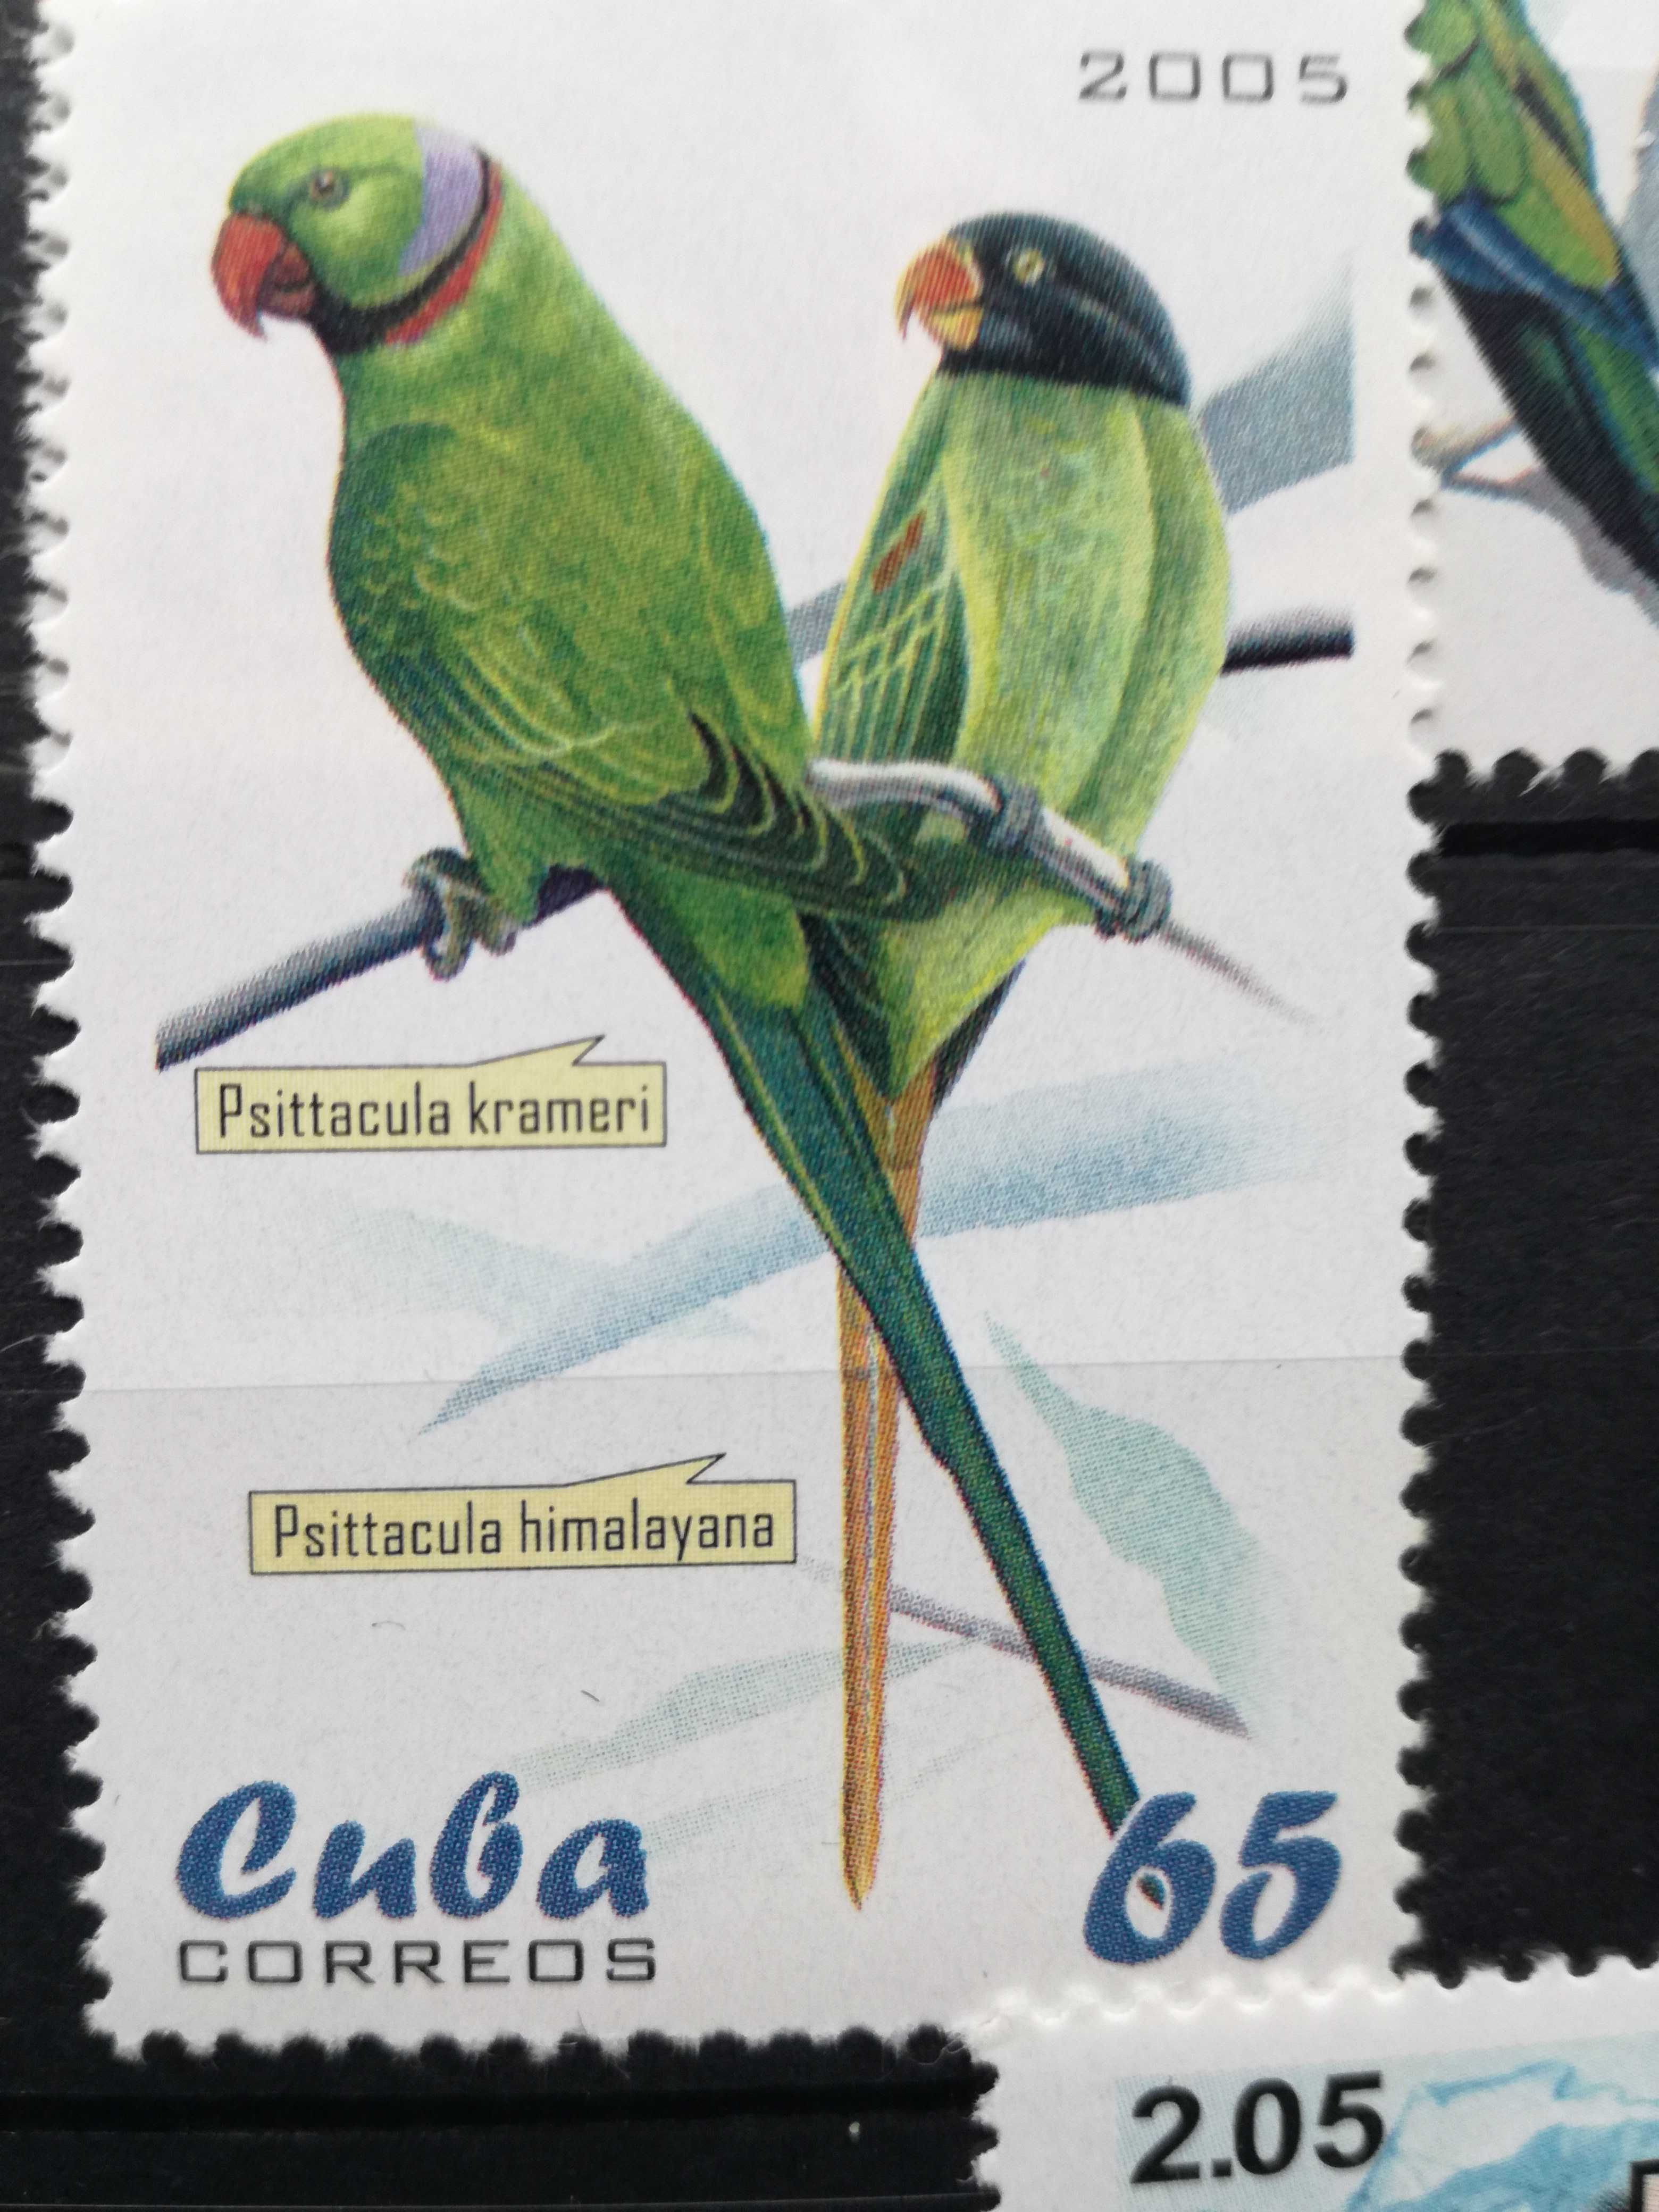 Vendo serie de selos de Cuba novos